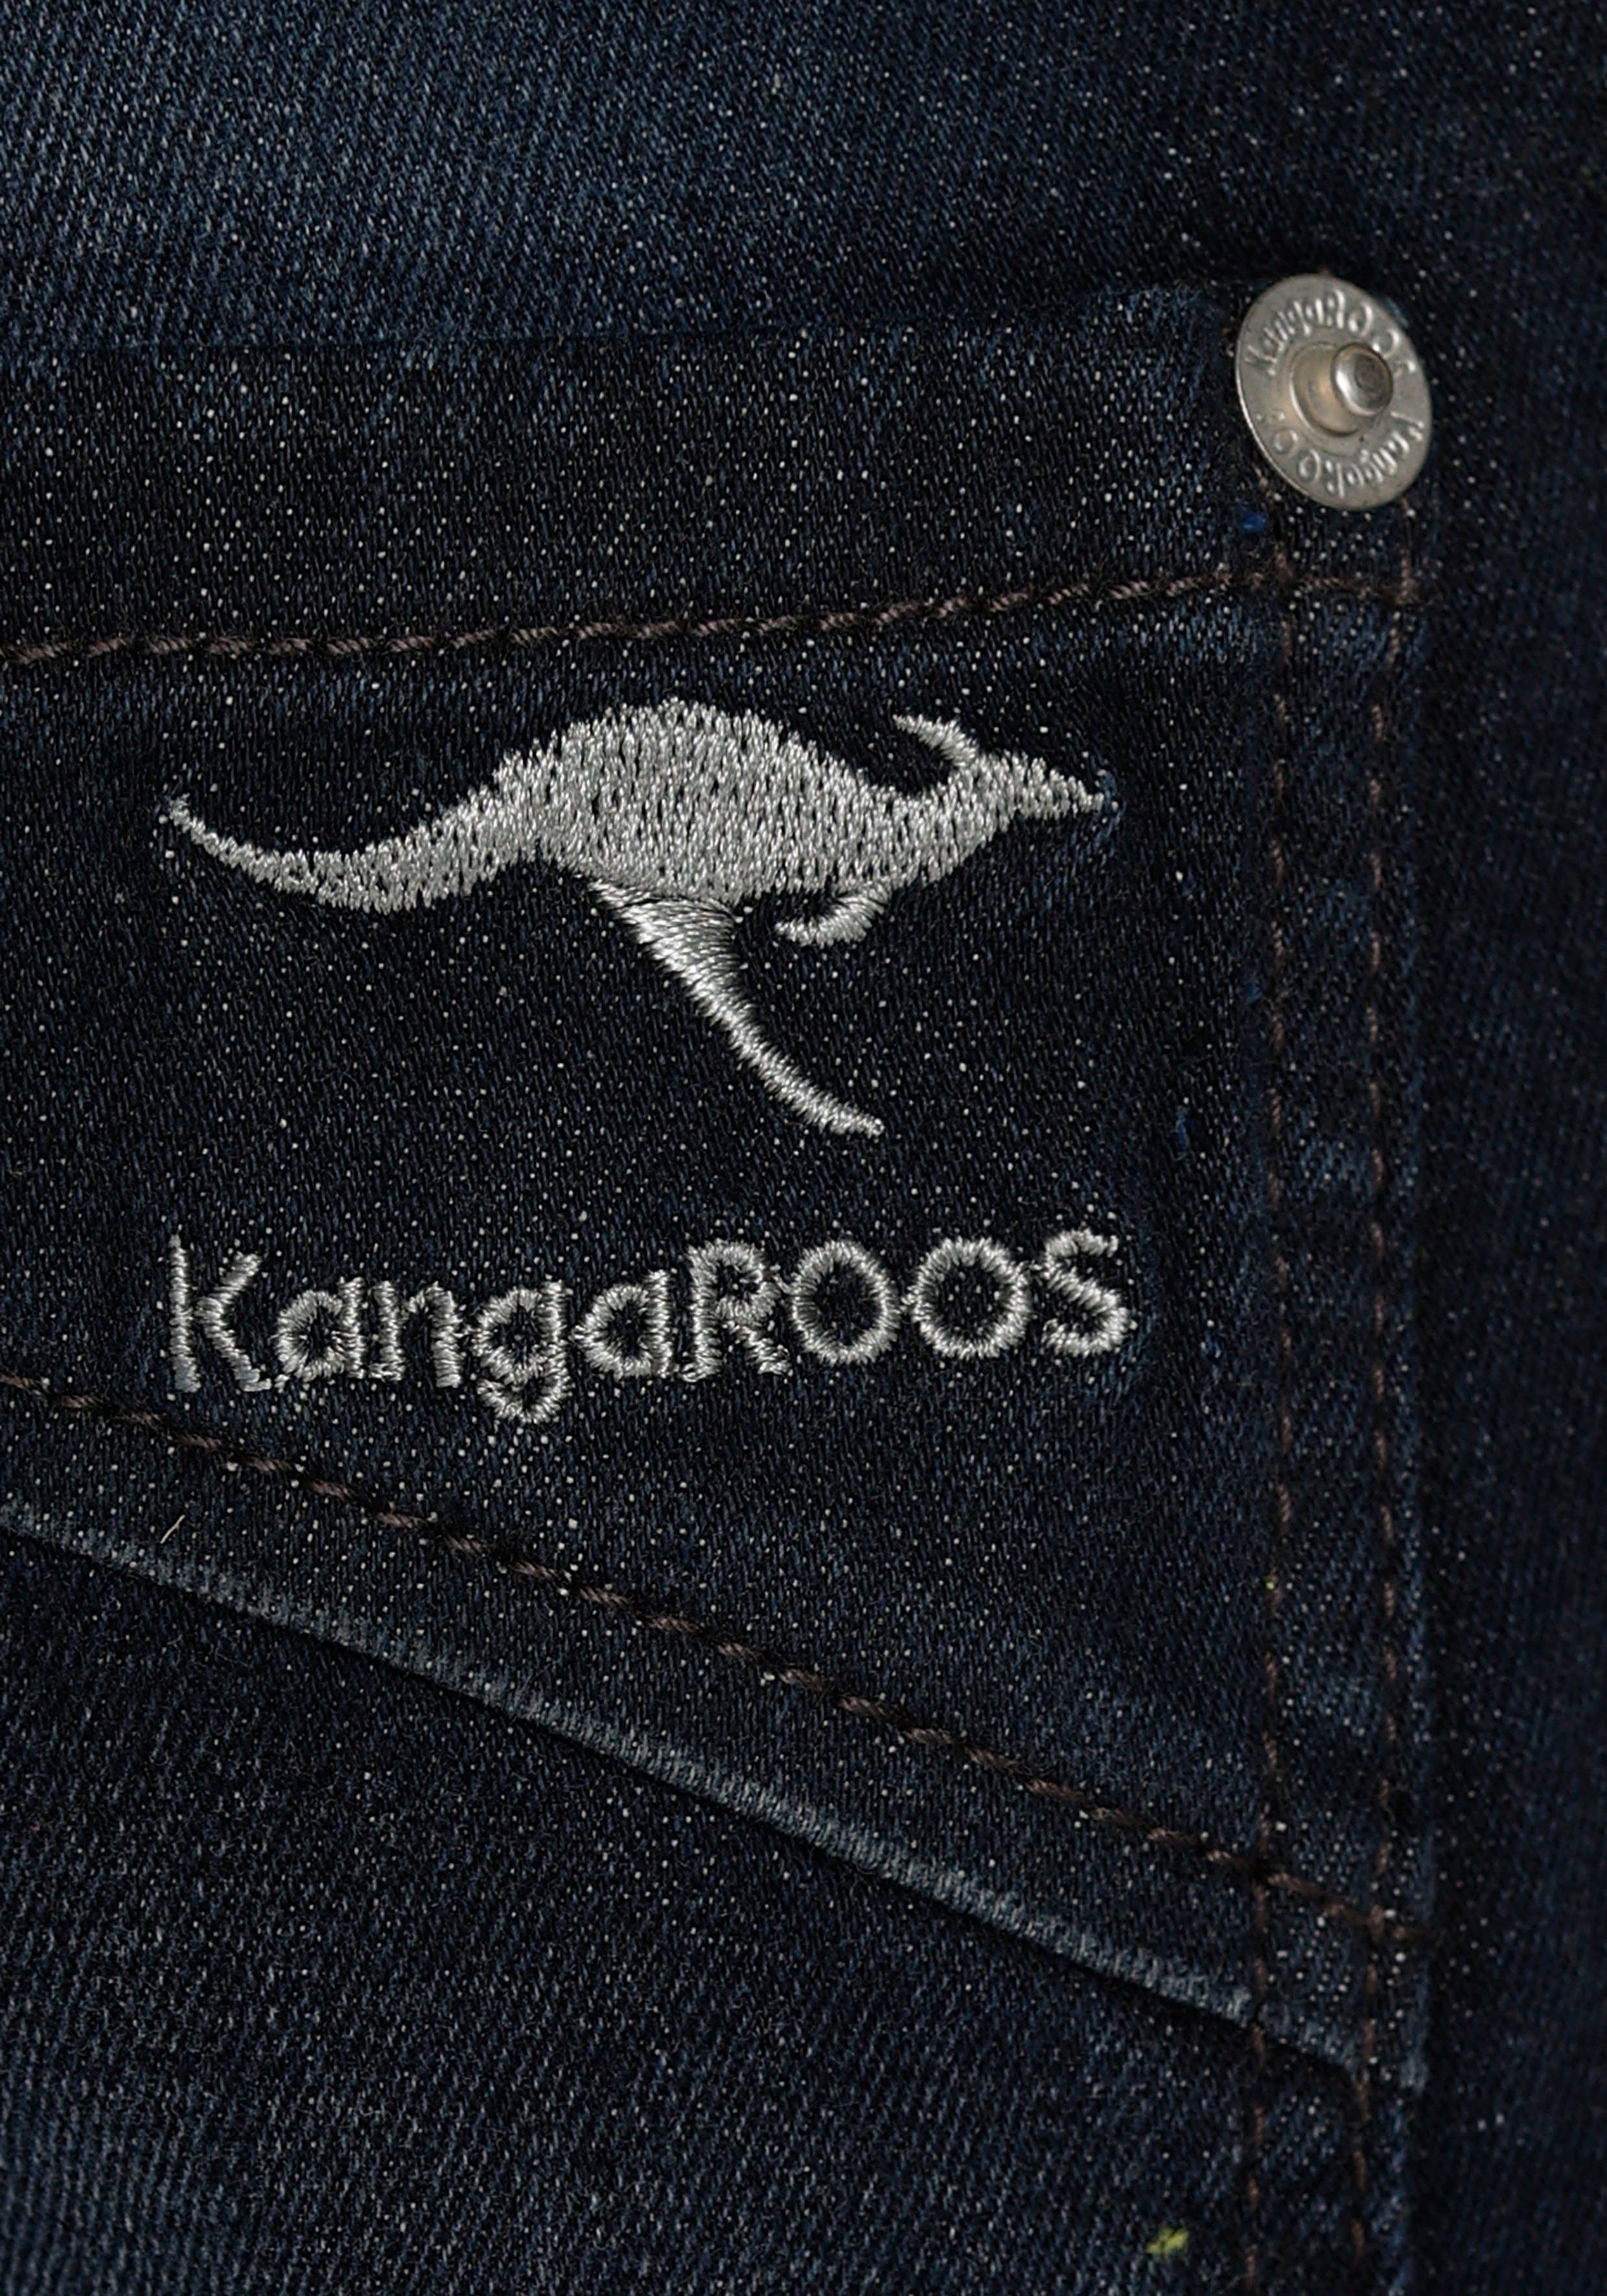 mit KangaROOS Stretch-Jeans, geradem fit Beinverlauf regular